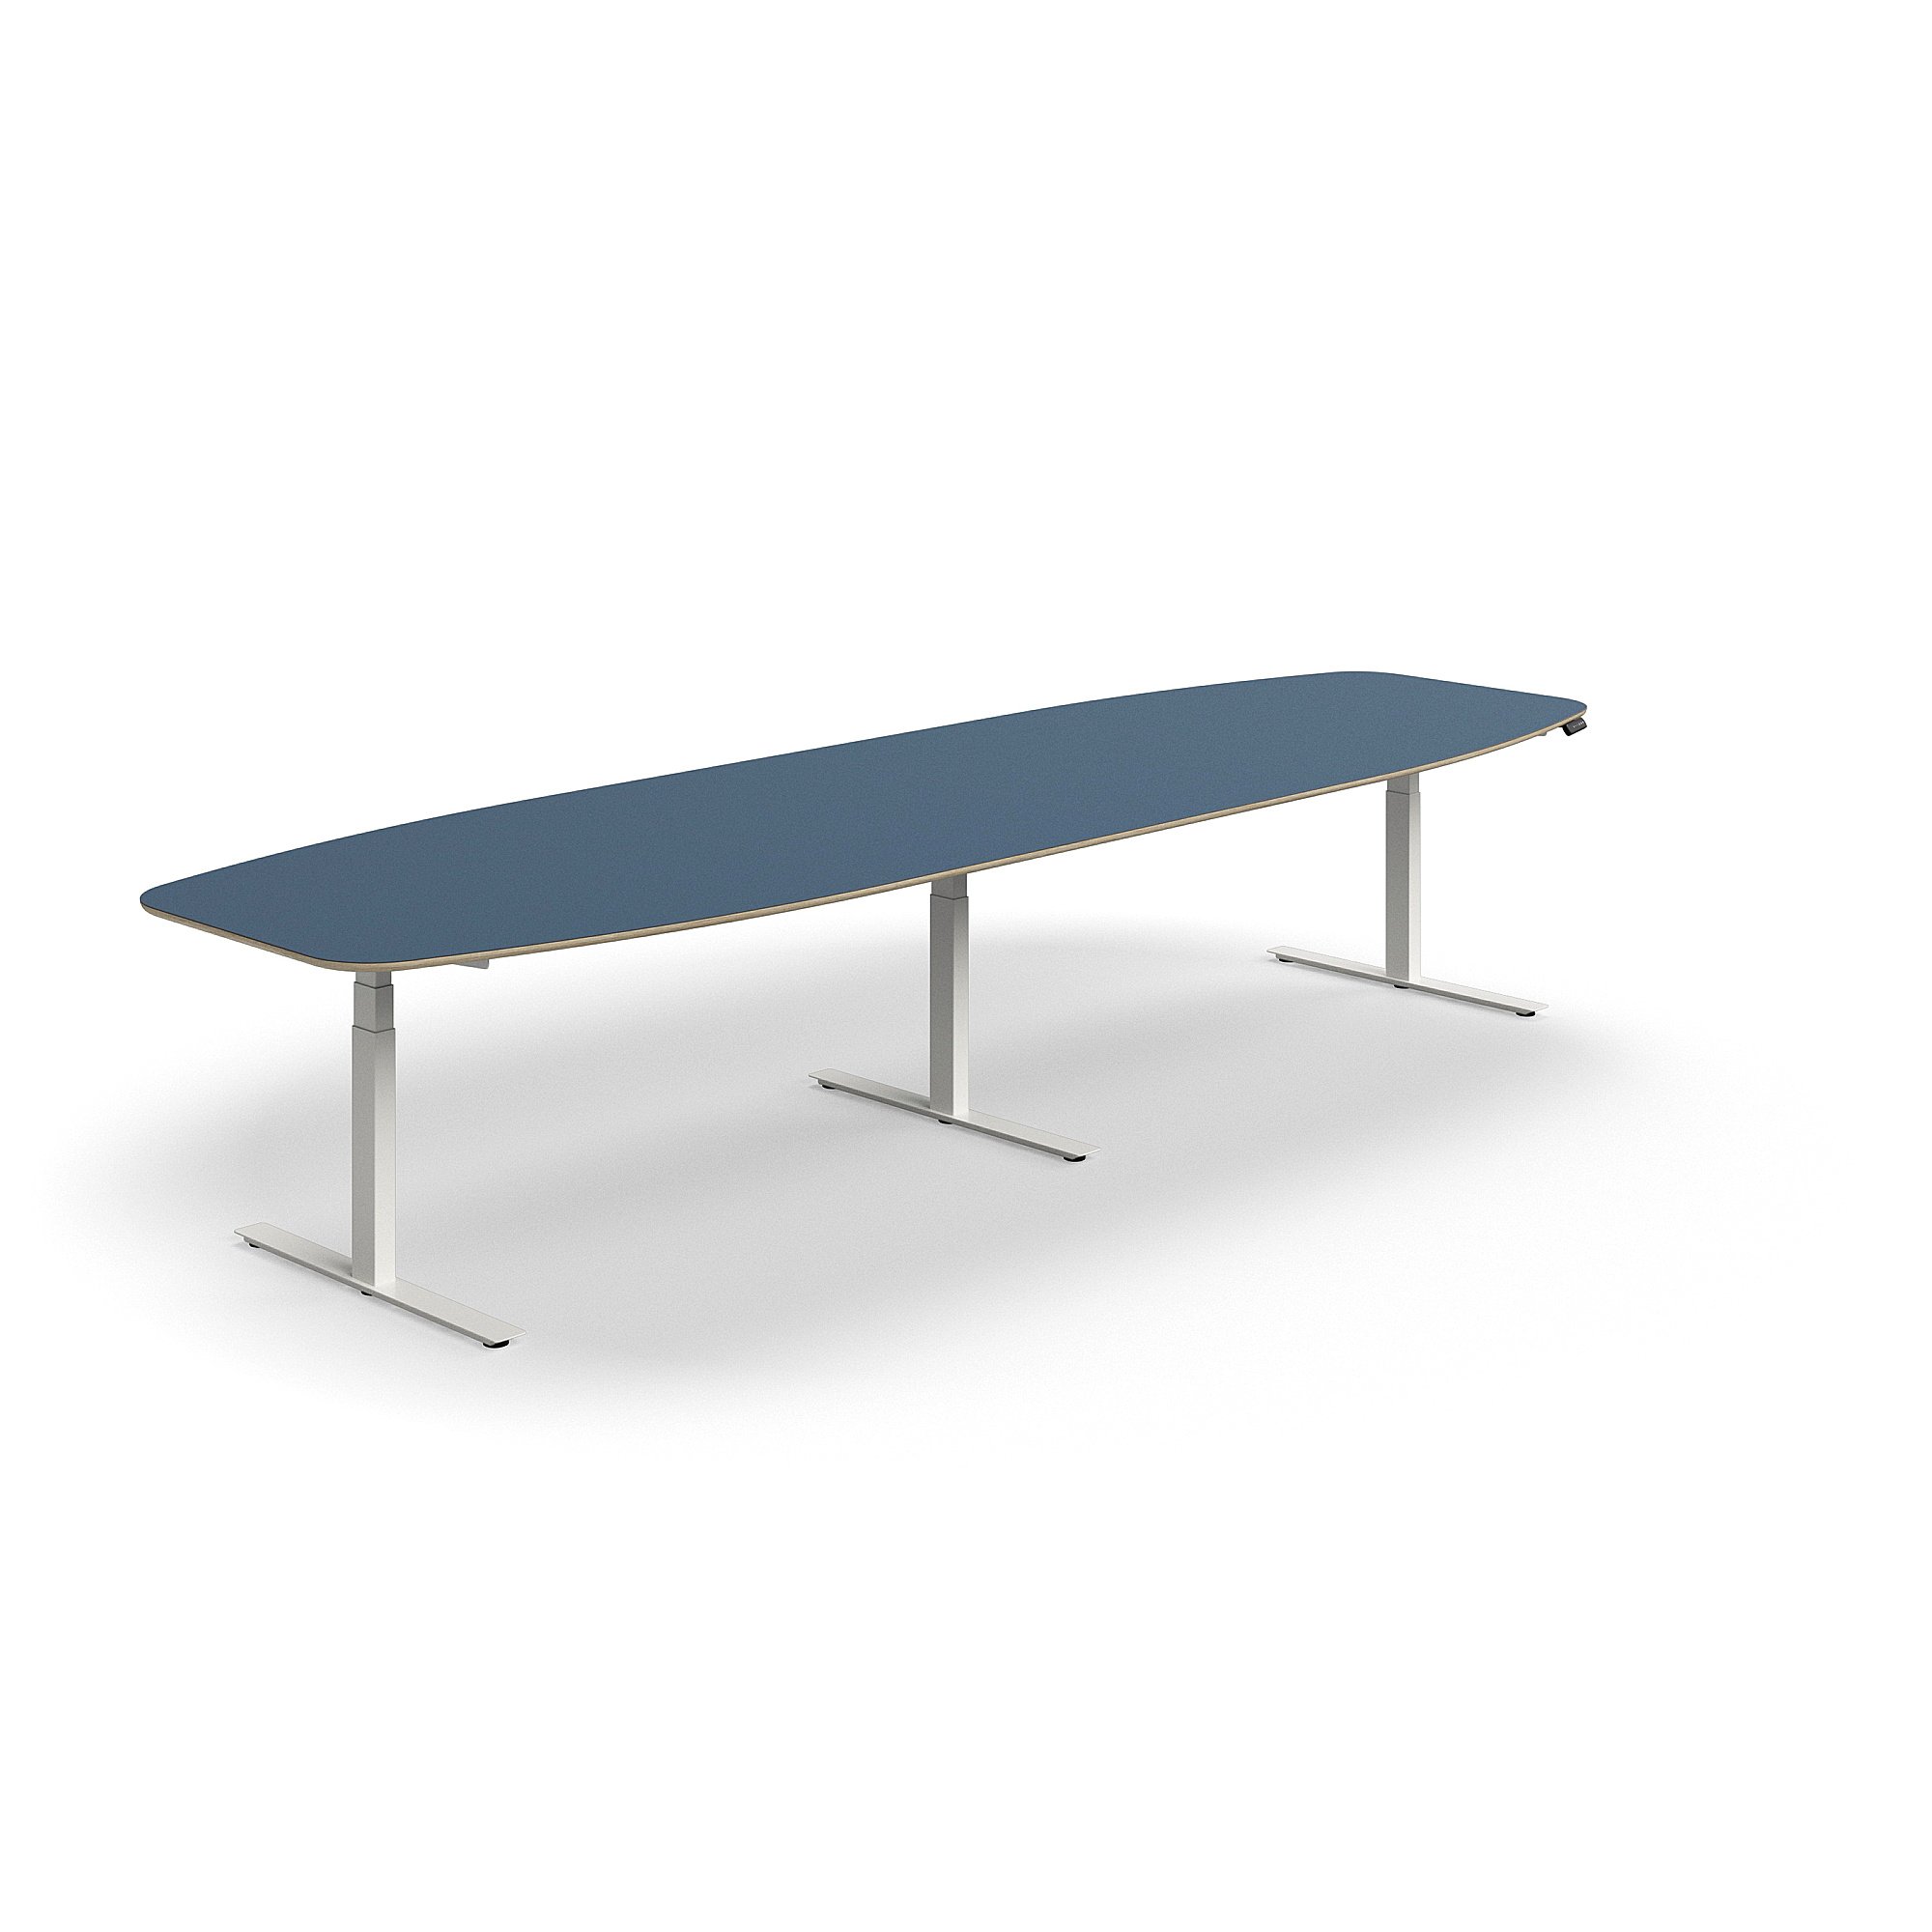 Jednací stůl AUDREY, výškově nastavitelný, 4000x1200 mm, bílá podnož, šedomodrá deska